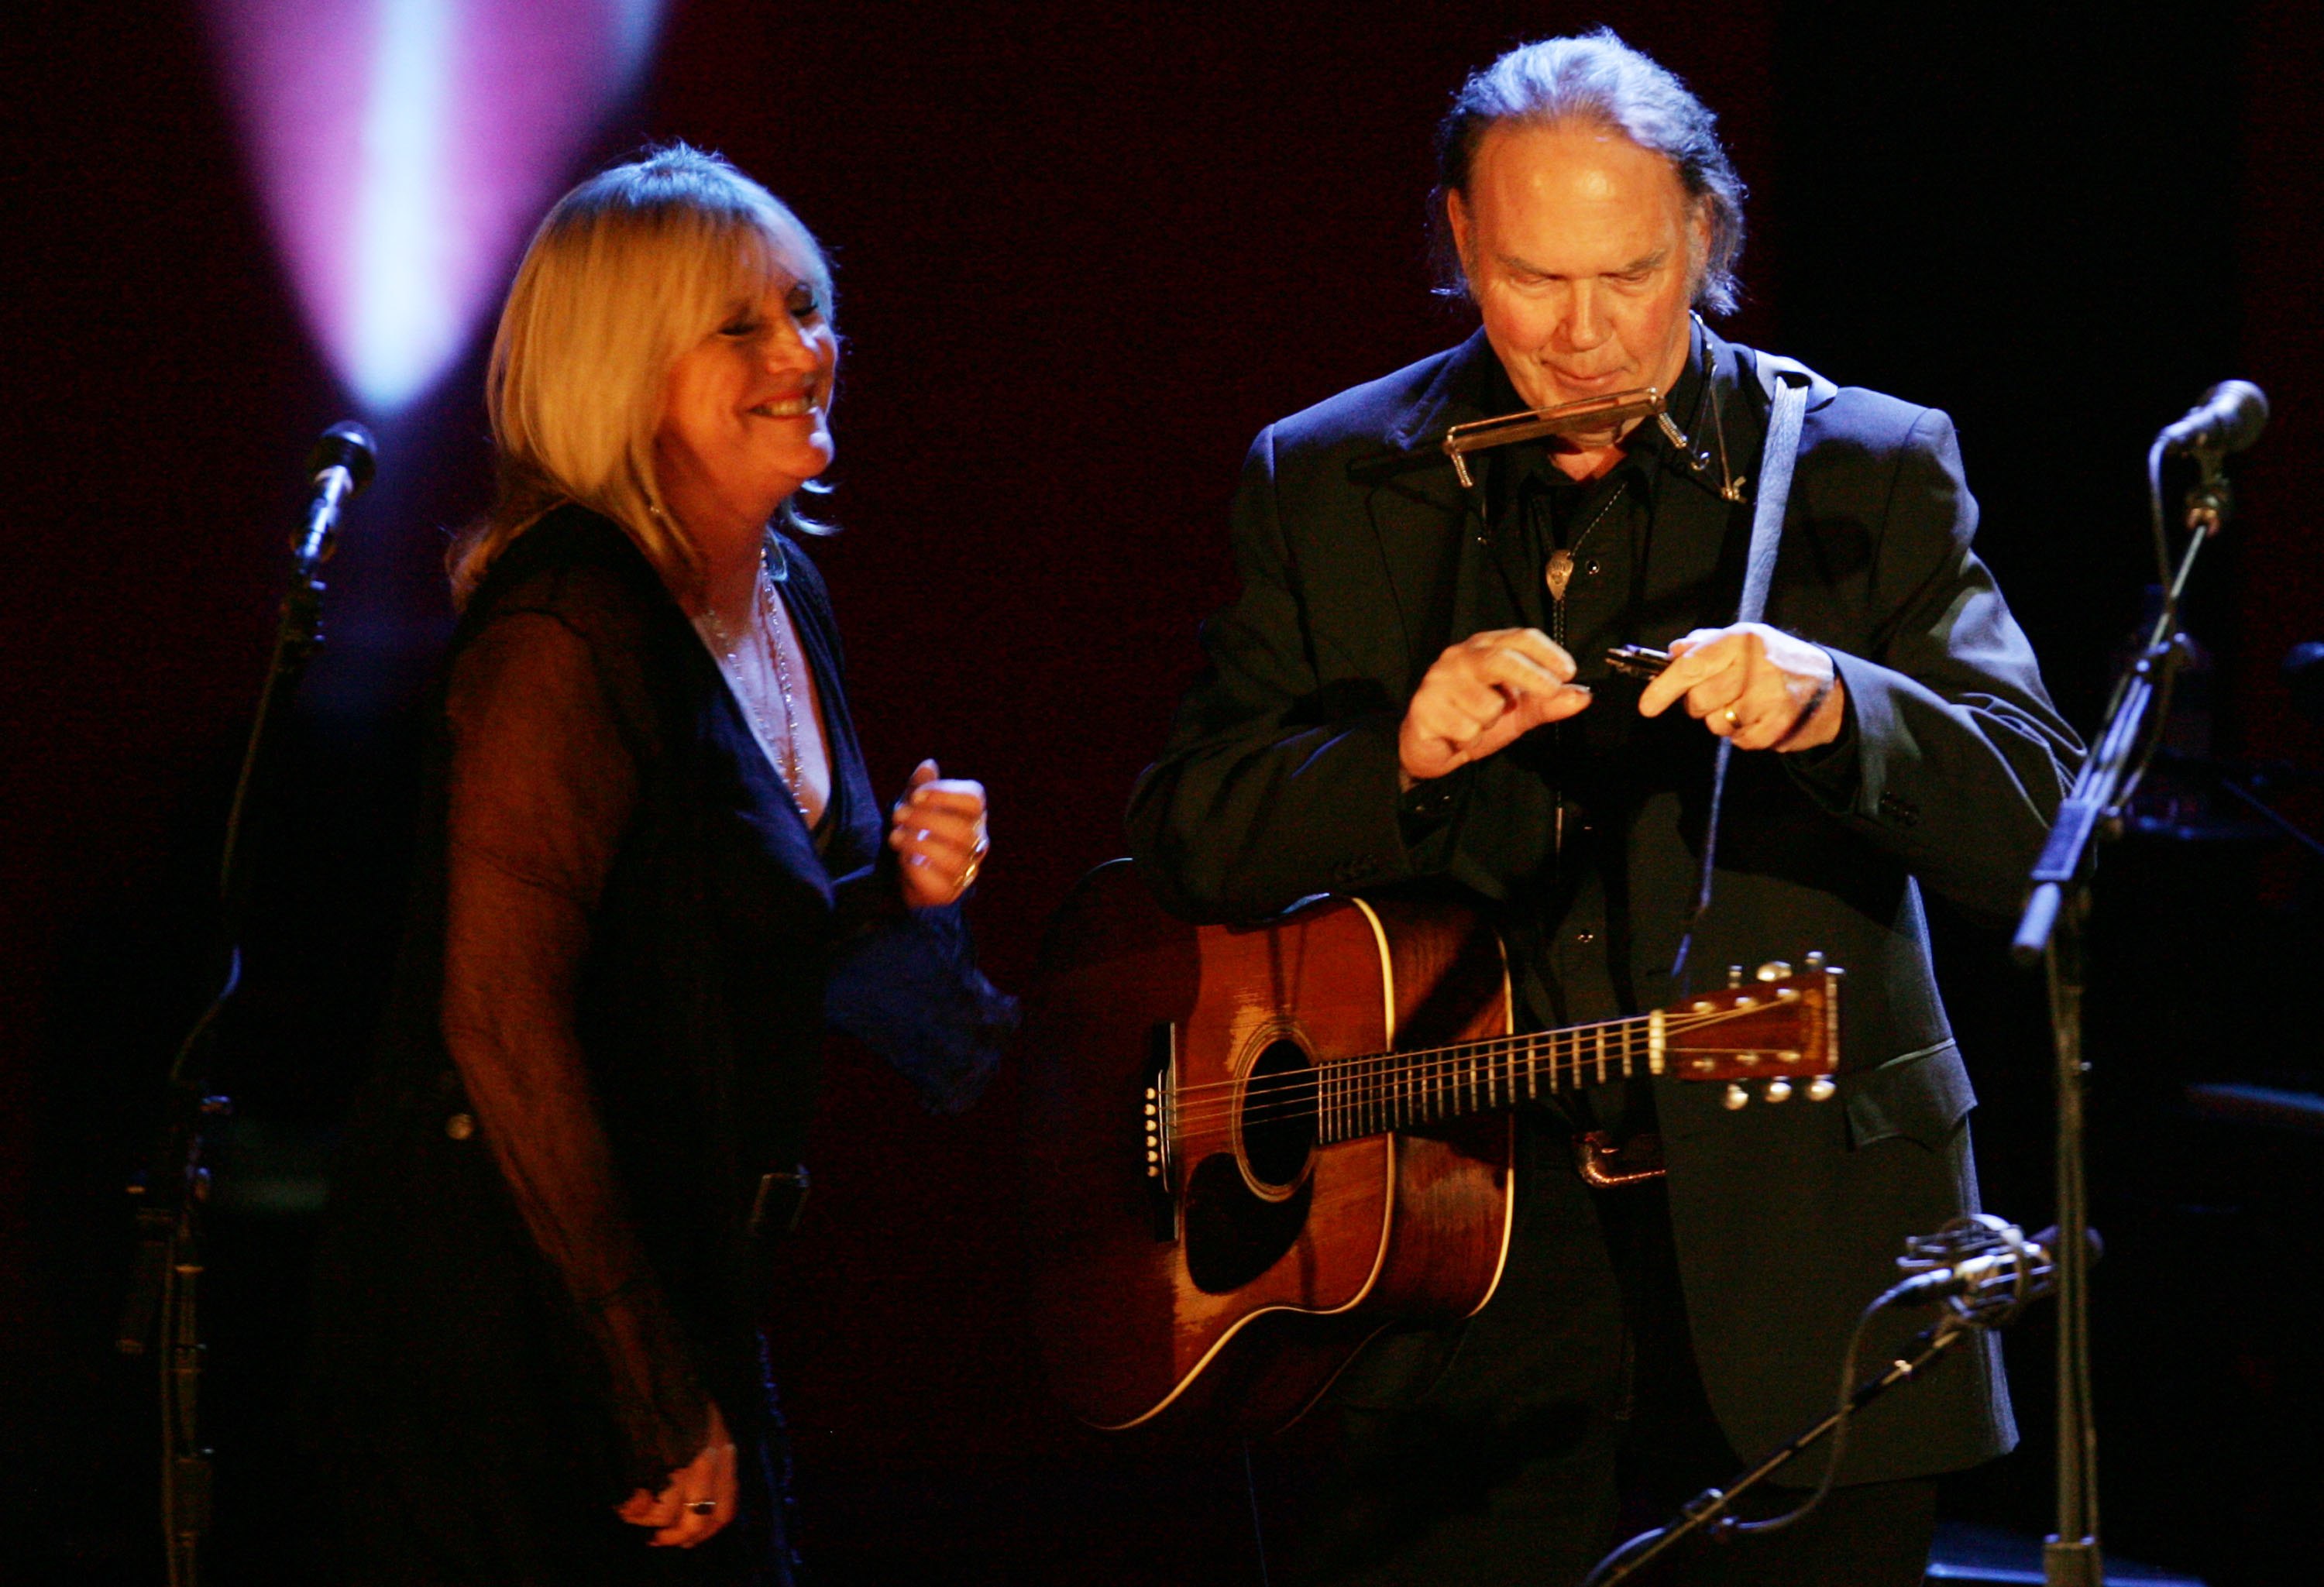 ¡Adiós a una gran voz! Falleció Pegi Young, compañera y ex esposa de Neil Young